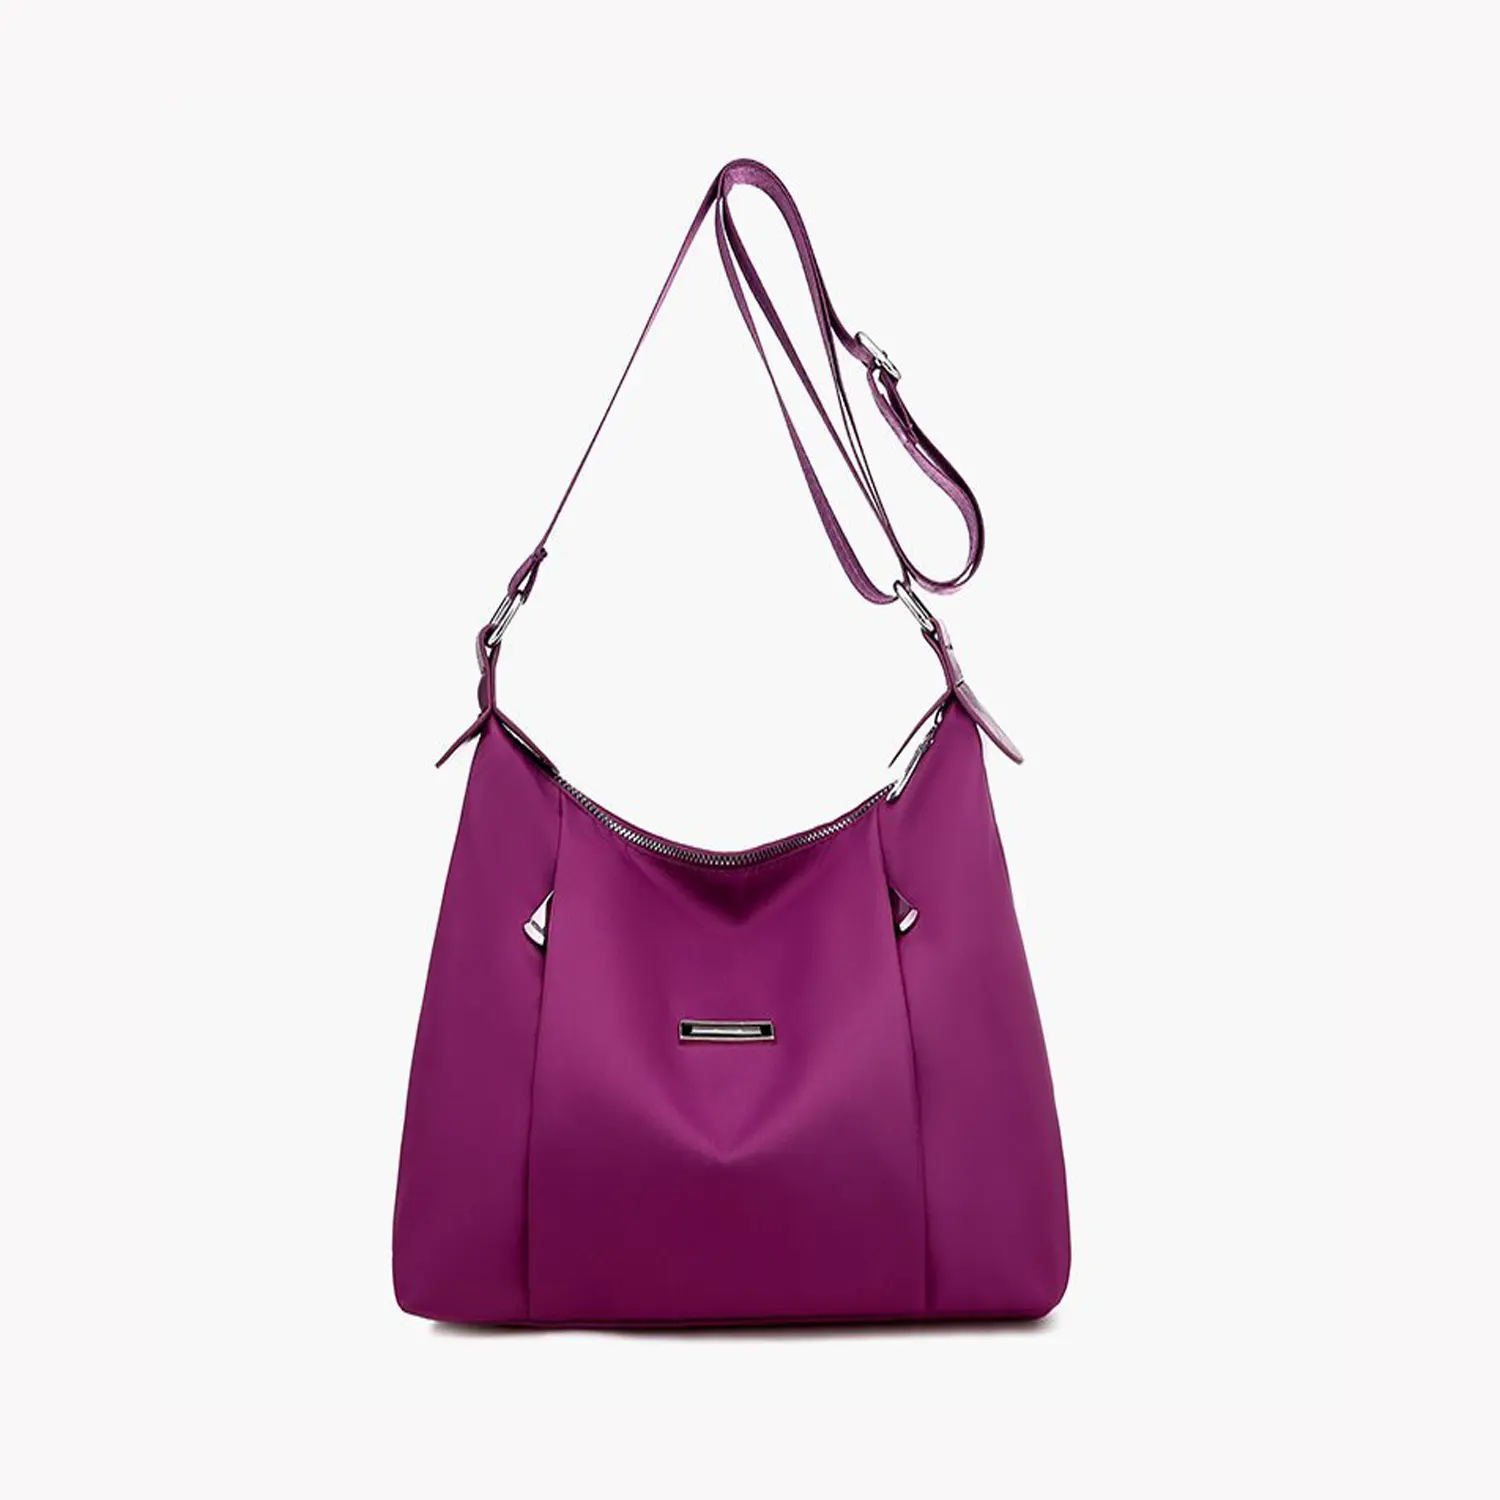 Yeni moda Oxford bez basit omuz çantası Satchel basit kişiselleştirilmiş kadın çanta toptan